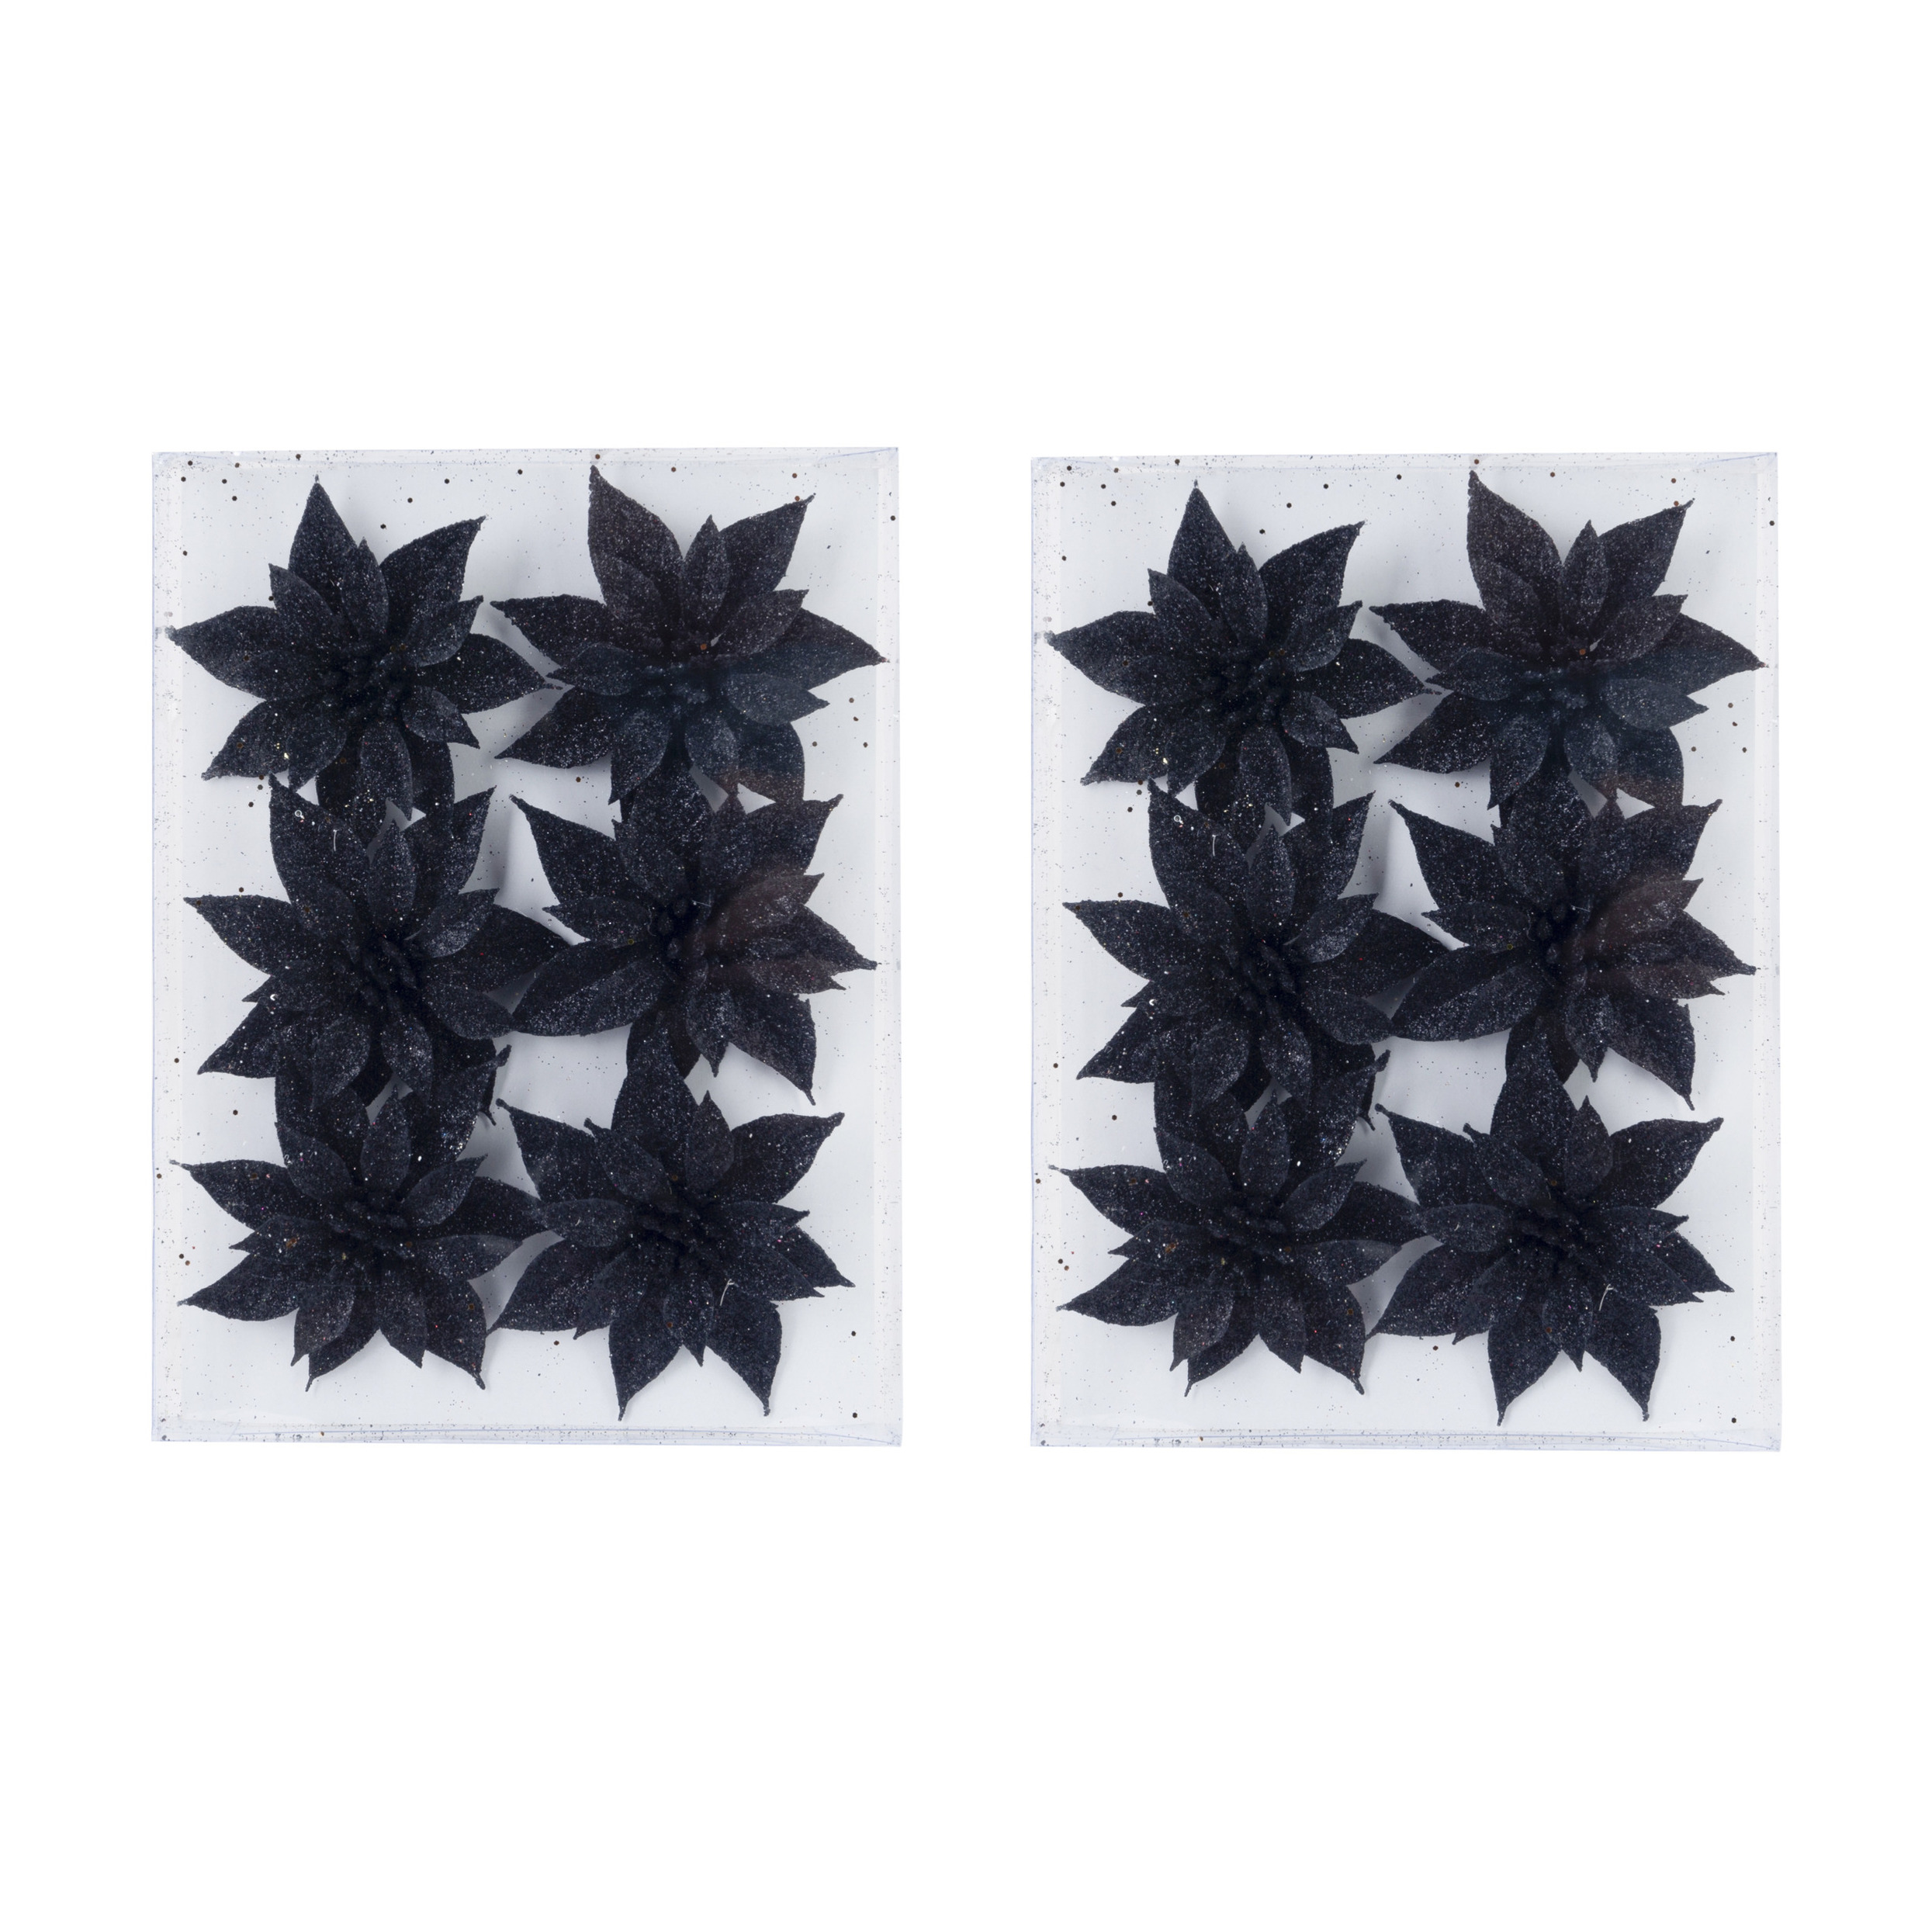 18x stuks decoratie bloemen rozen zwart glitter op ijzerdraad 8 cm